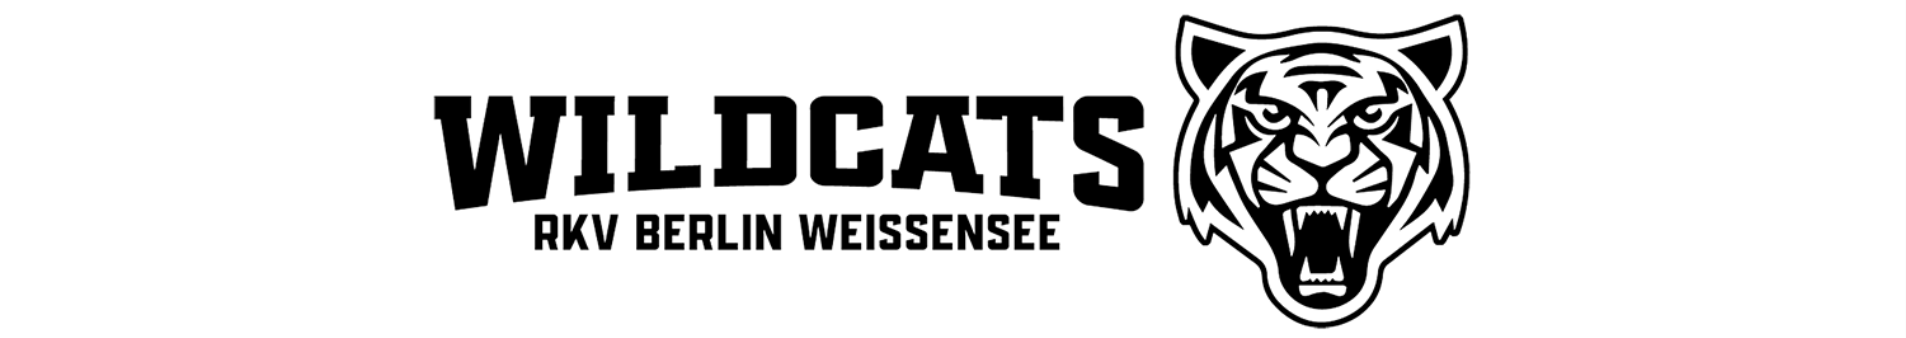 Wildcats RKV Berlin Weissensee Title Image